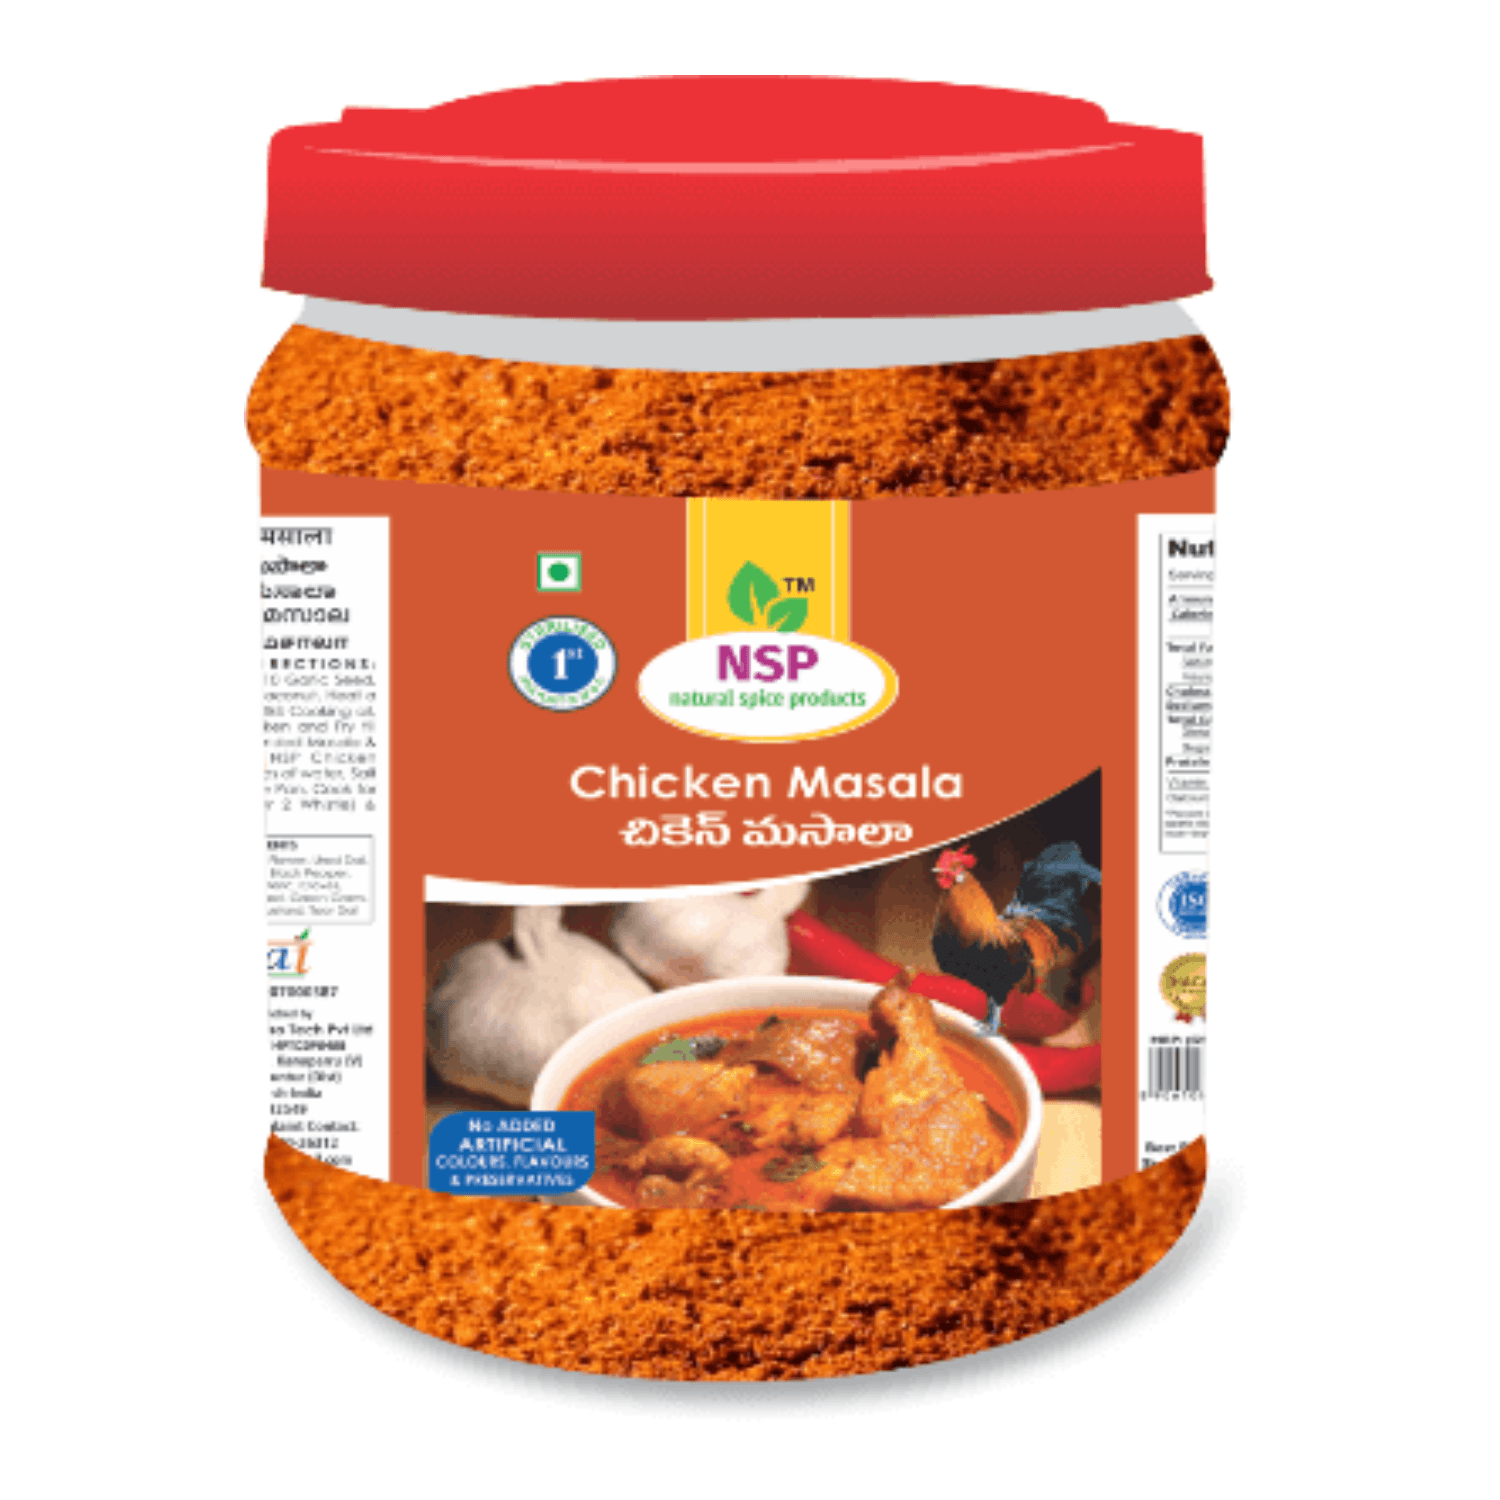 NSP Chicken Masala -1Kg Jar Pack